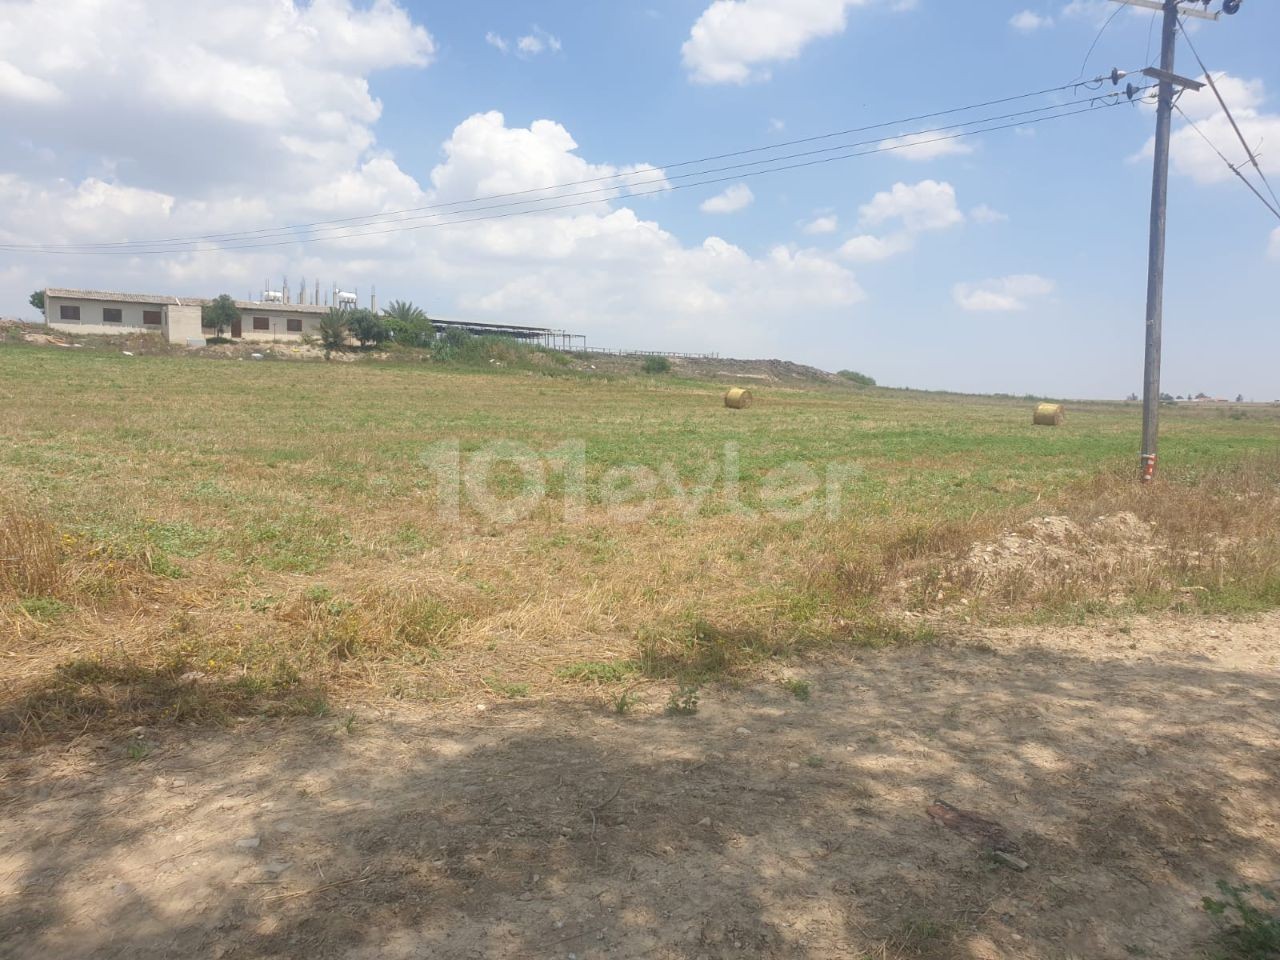 Land for Sale in Nicosia, Meric Region Open for Development